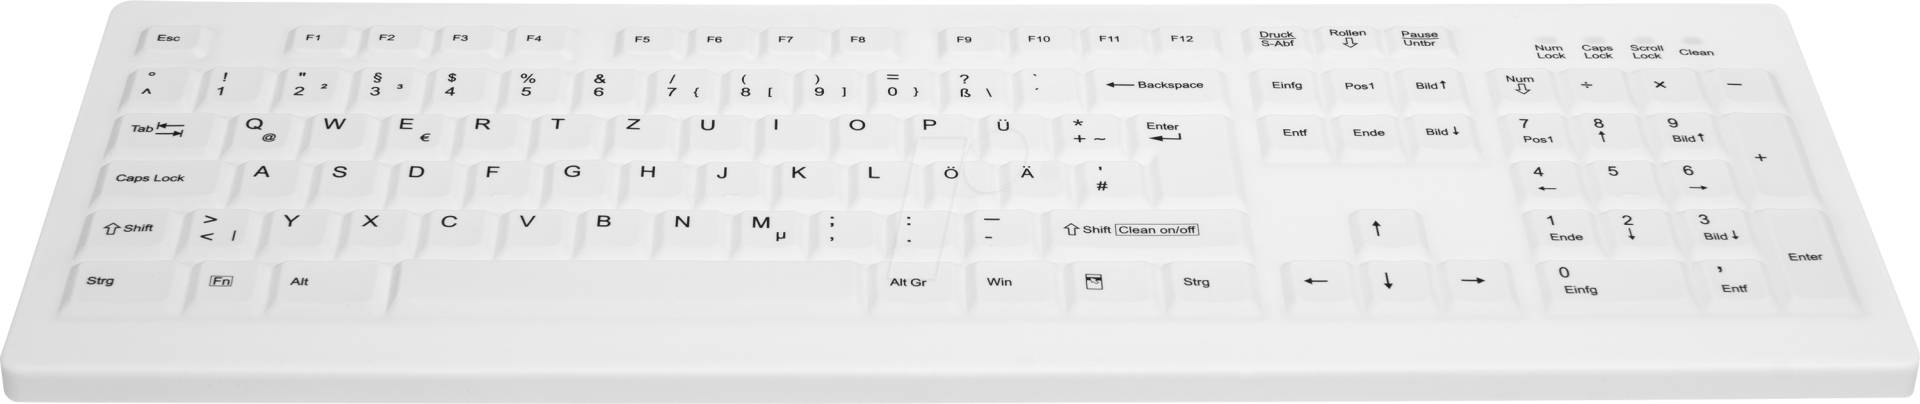 AK-C8100FFUSWGE - Funk-Tastatur, USB, IP68, desinfizierbar, weiß, DE von Cherry